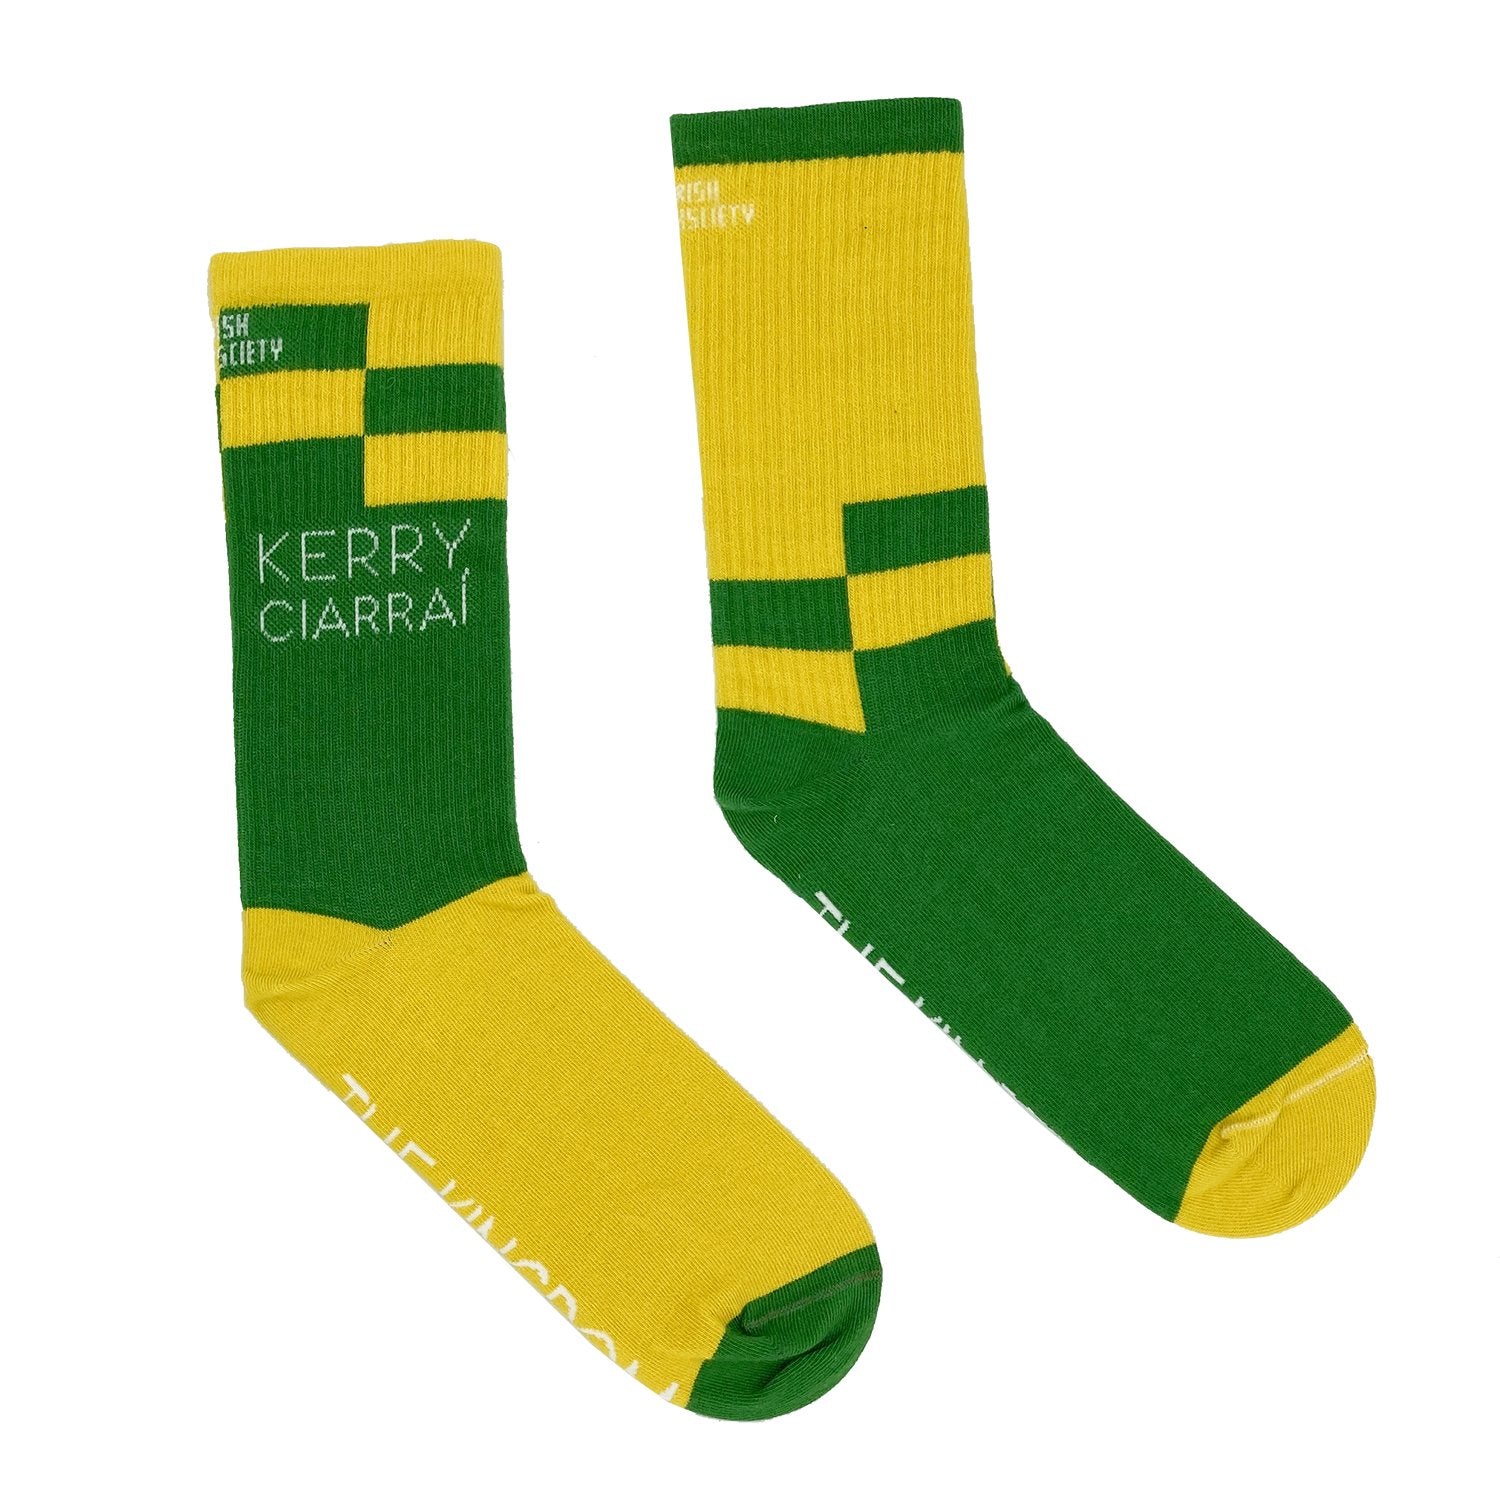 Socks - Kerry - The Kingdom